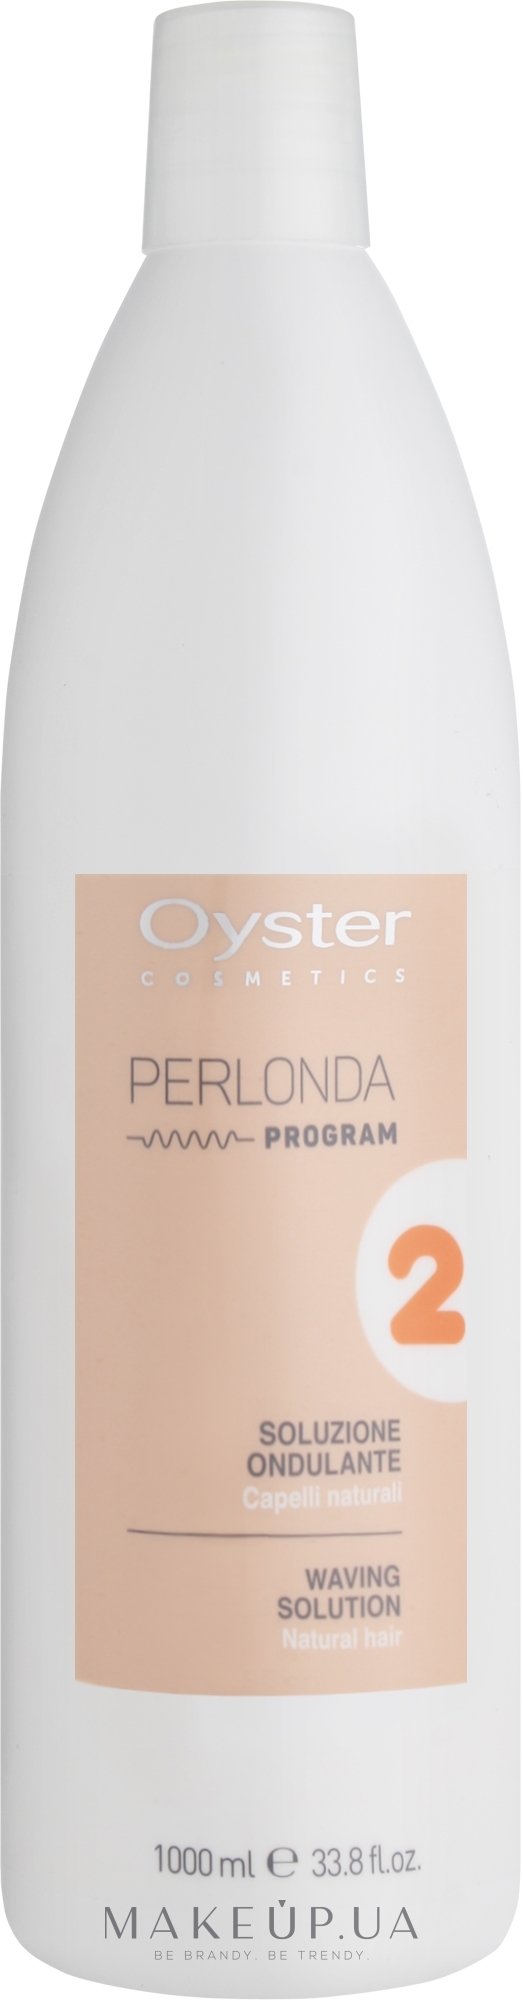 Засіб для хімічного завивання нормального волосся - Oyster Cosmetics Perlonda 2 Normal Hair — фото 1000ml